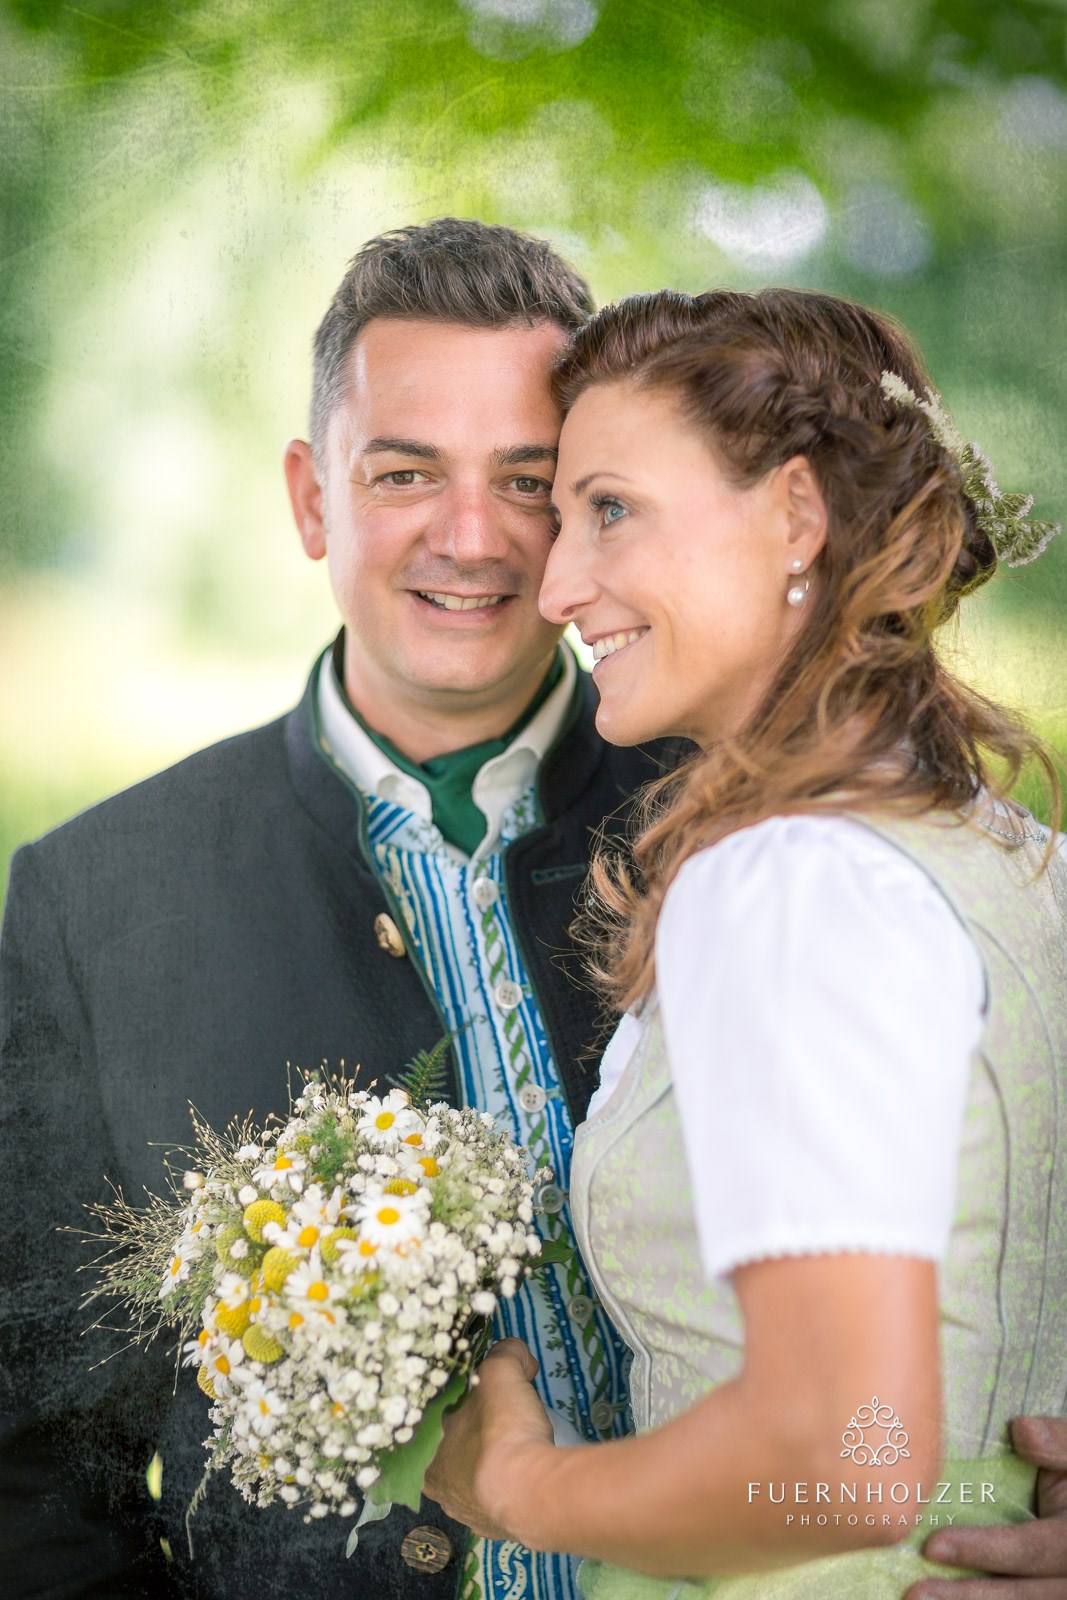 Hochzeitsfotograf: Fuernholzer - Hochzeitsfotograf in Admont - Fuernholzer Photography